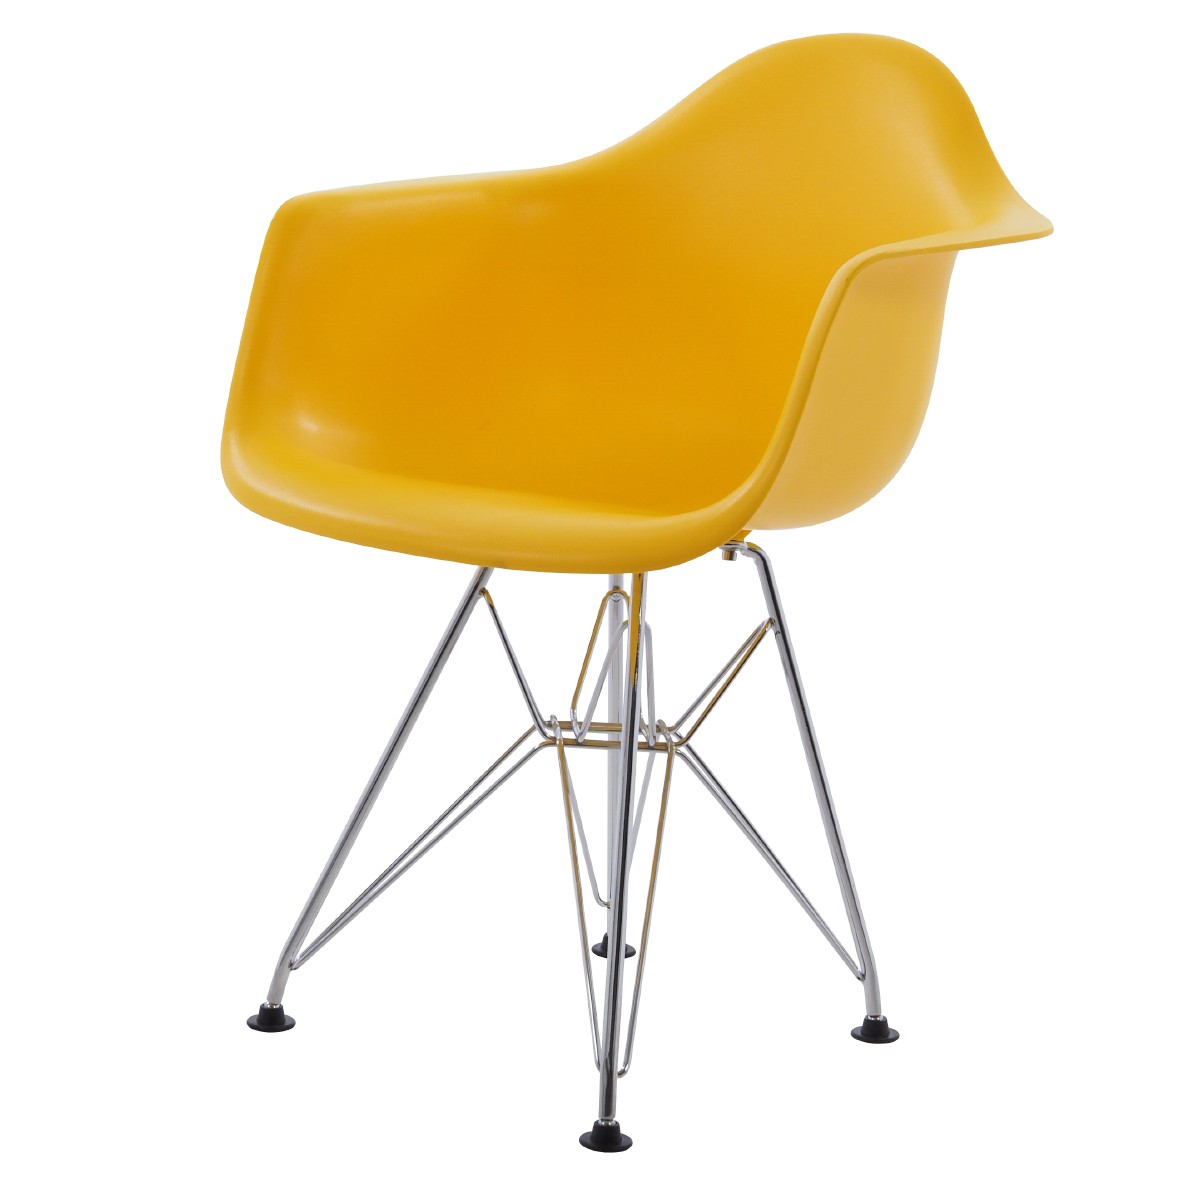 yellow children's chair